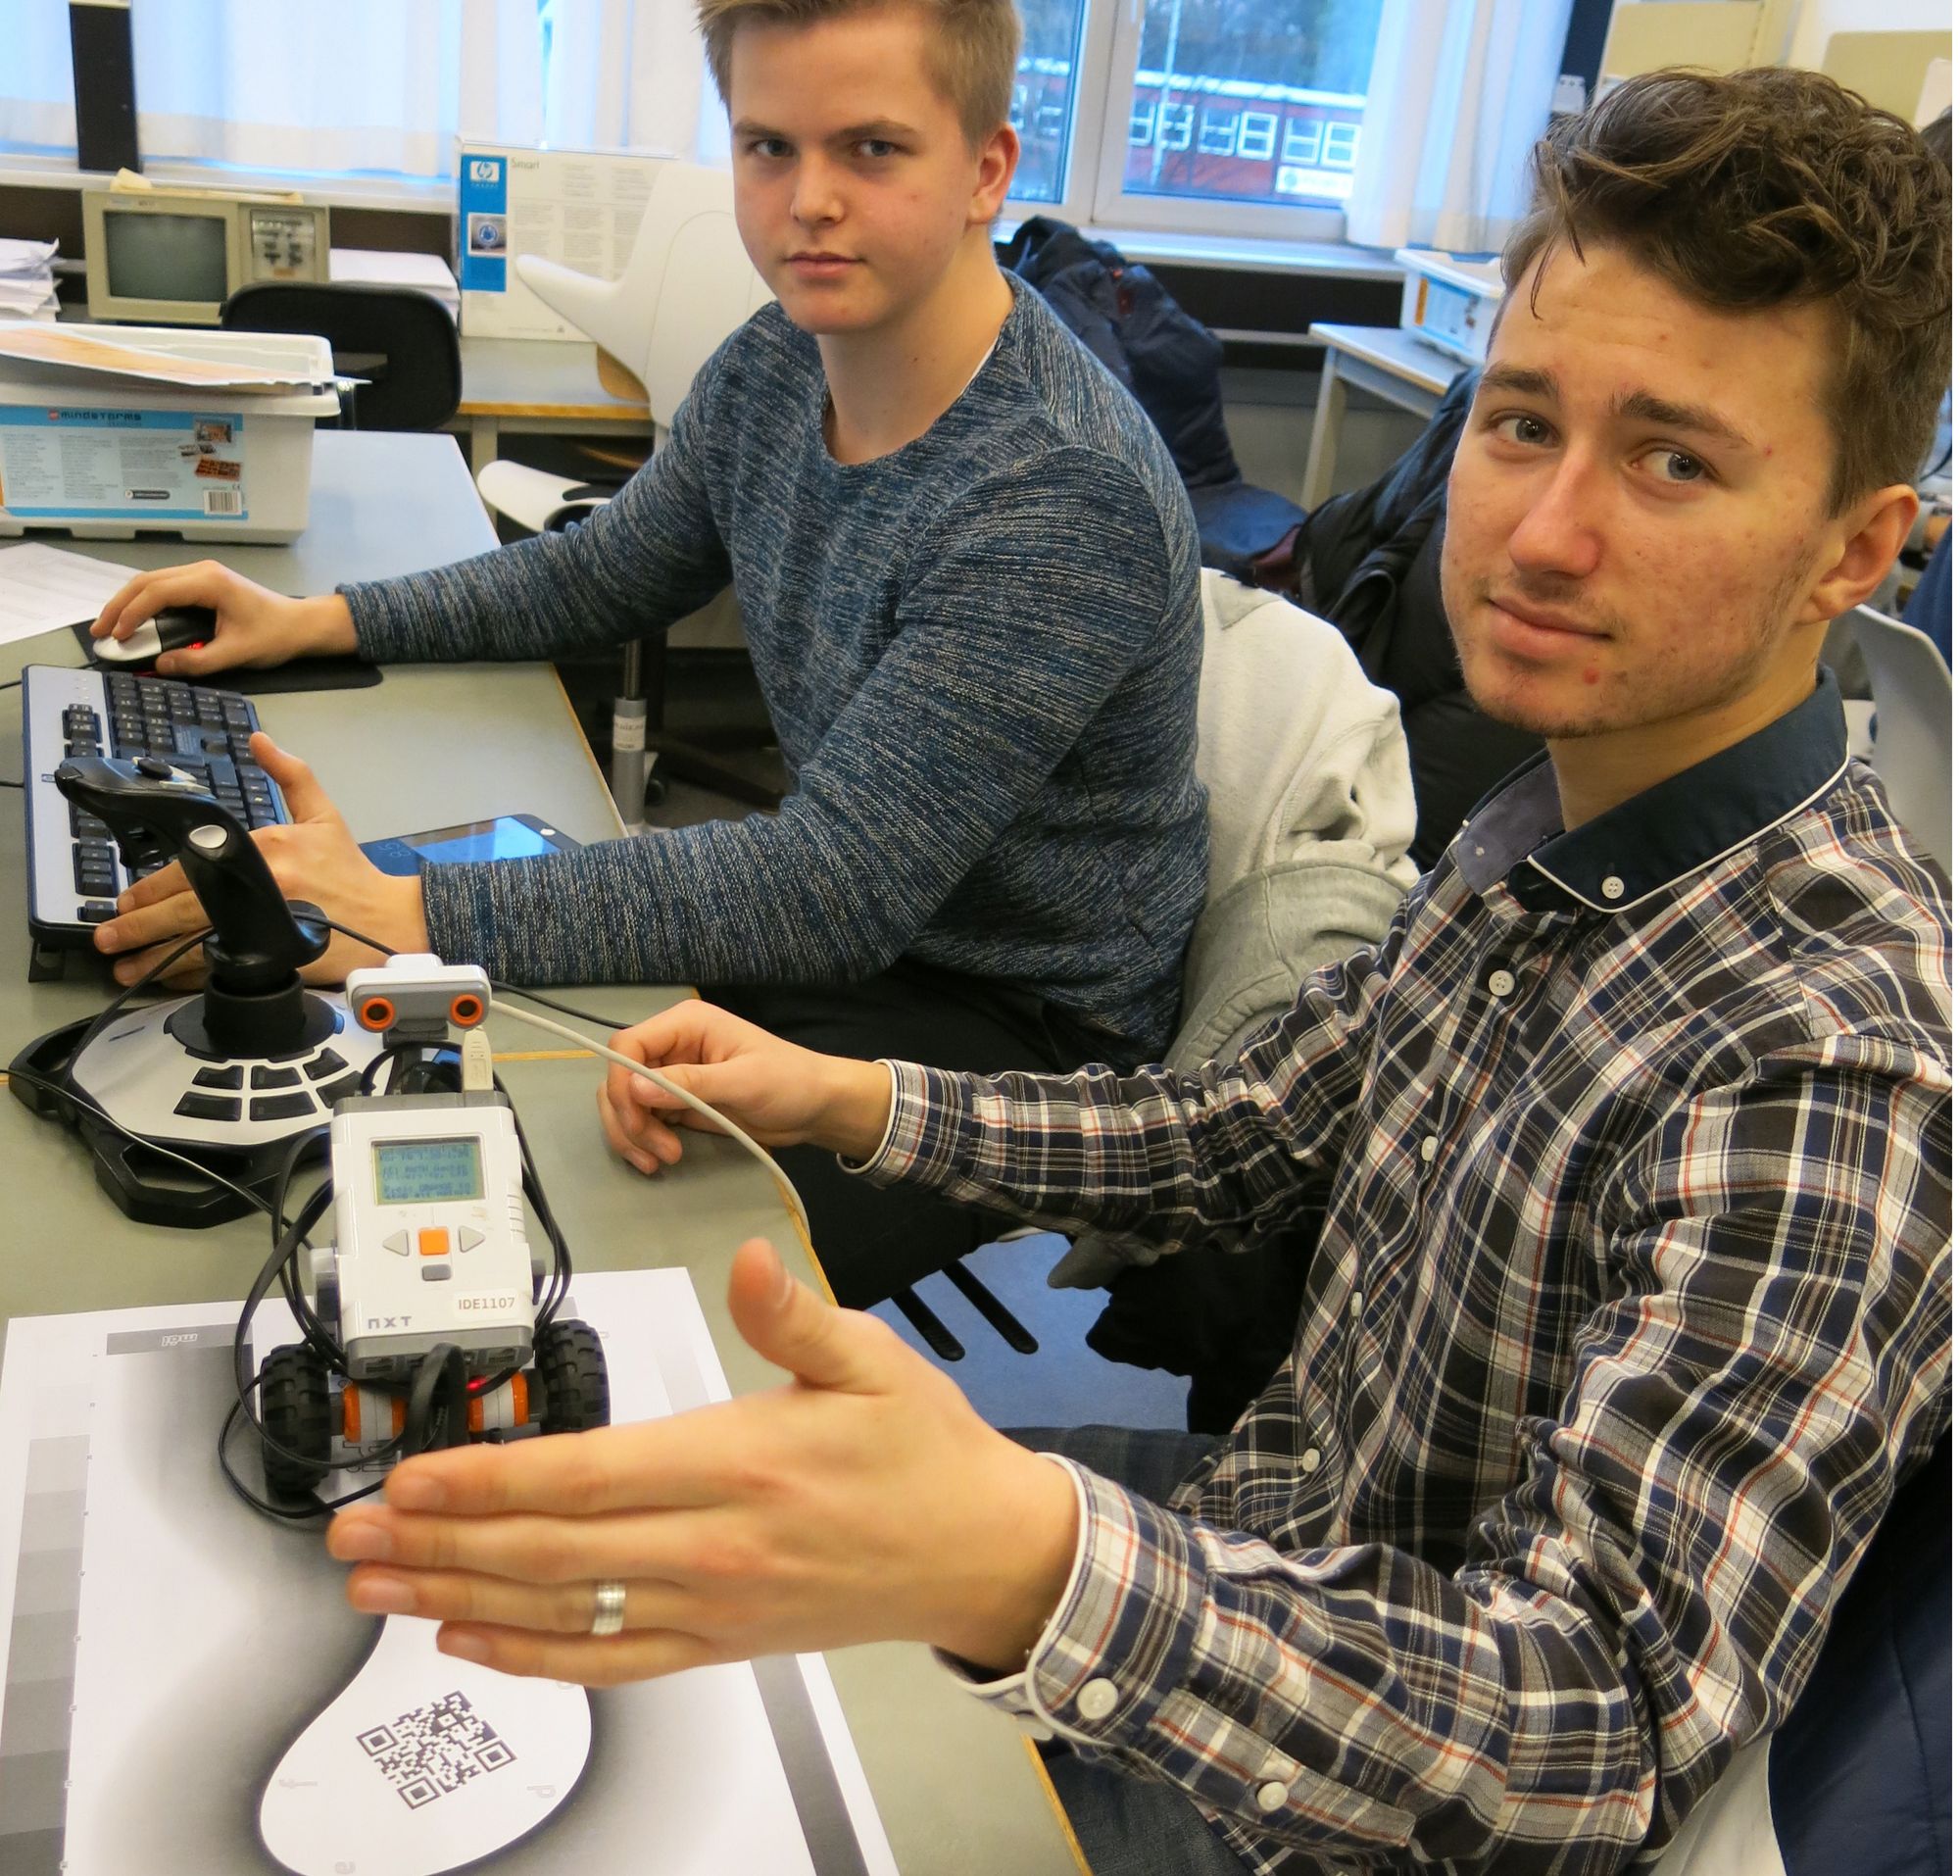 Simen Grønli, til venstre, og Christian Høie på Forskerlinja lærer robotbygging og programmering på universitetet. Foto: Lars Gunnar Dahle, UiS.